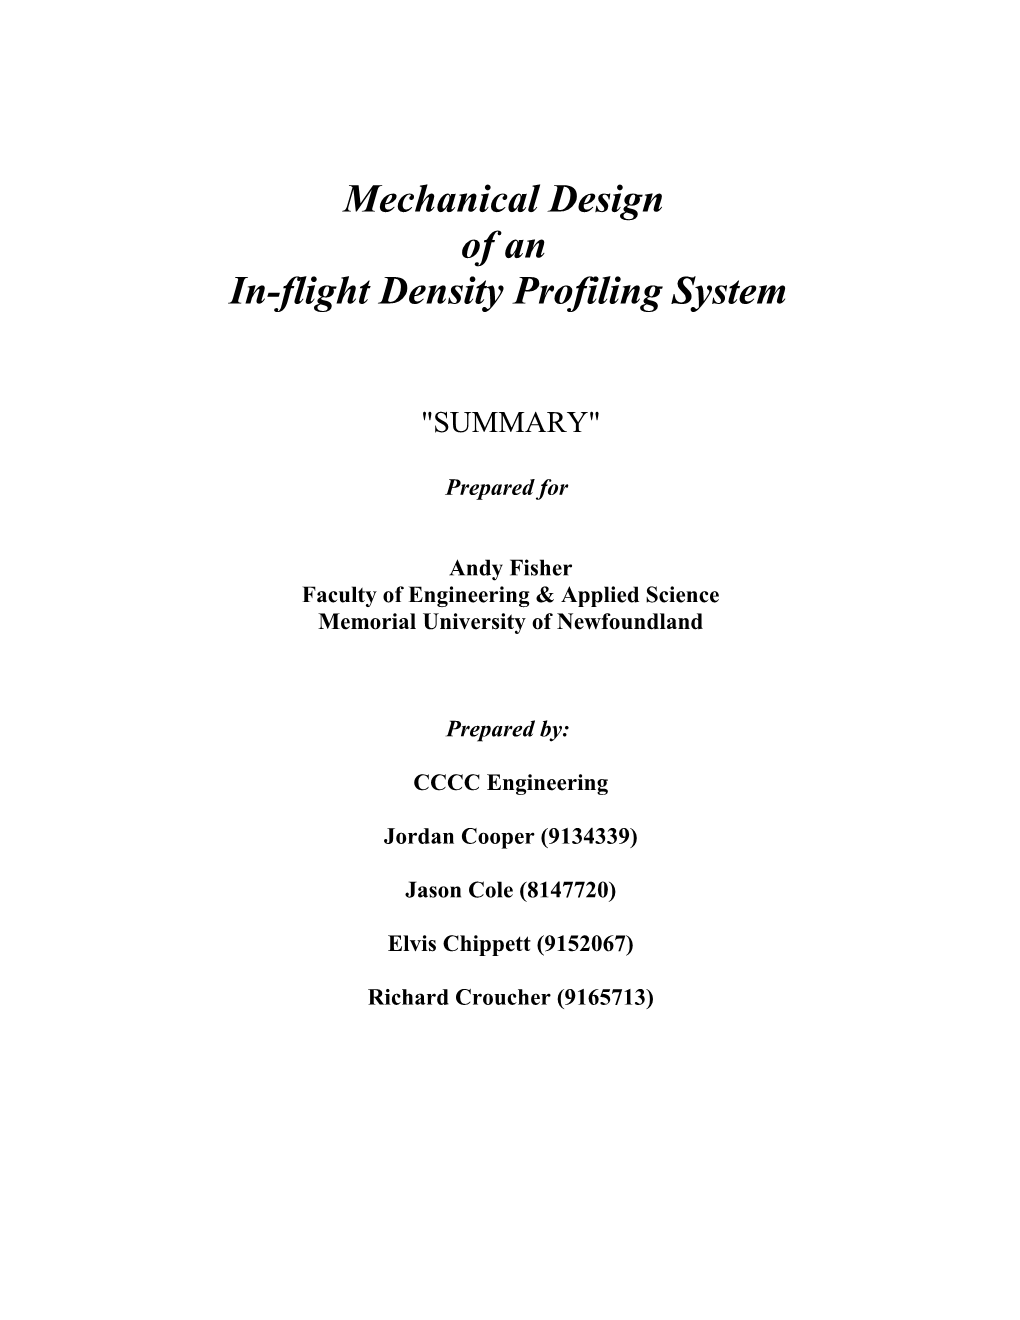 In-Flight Density Profiling System